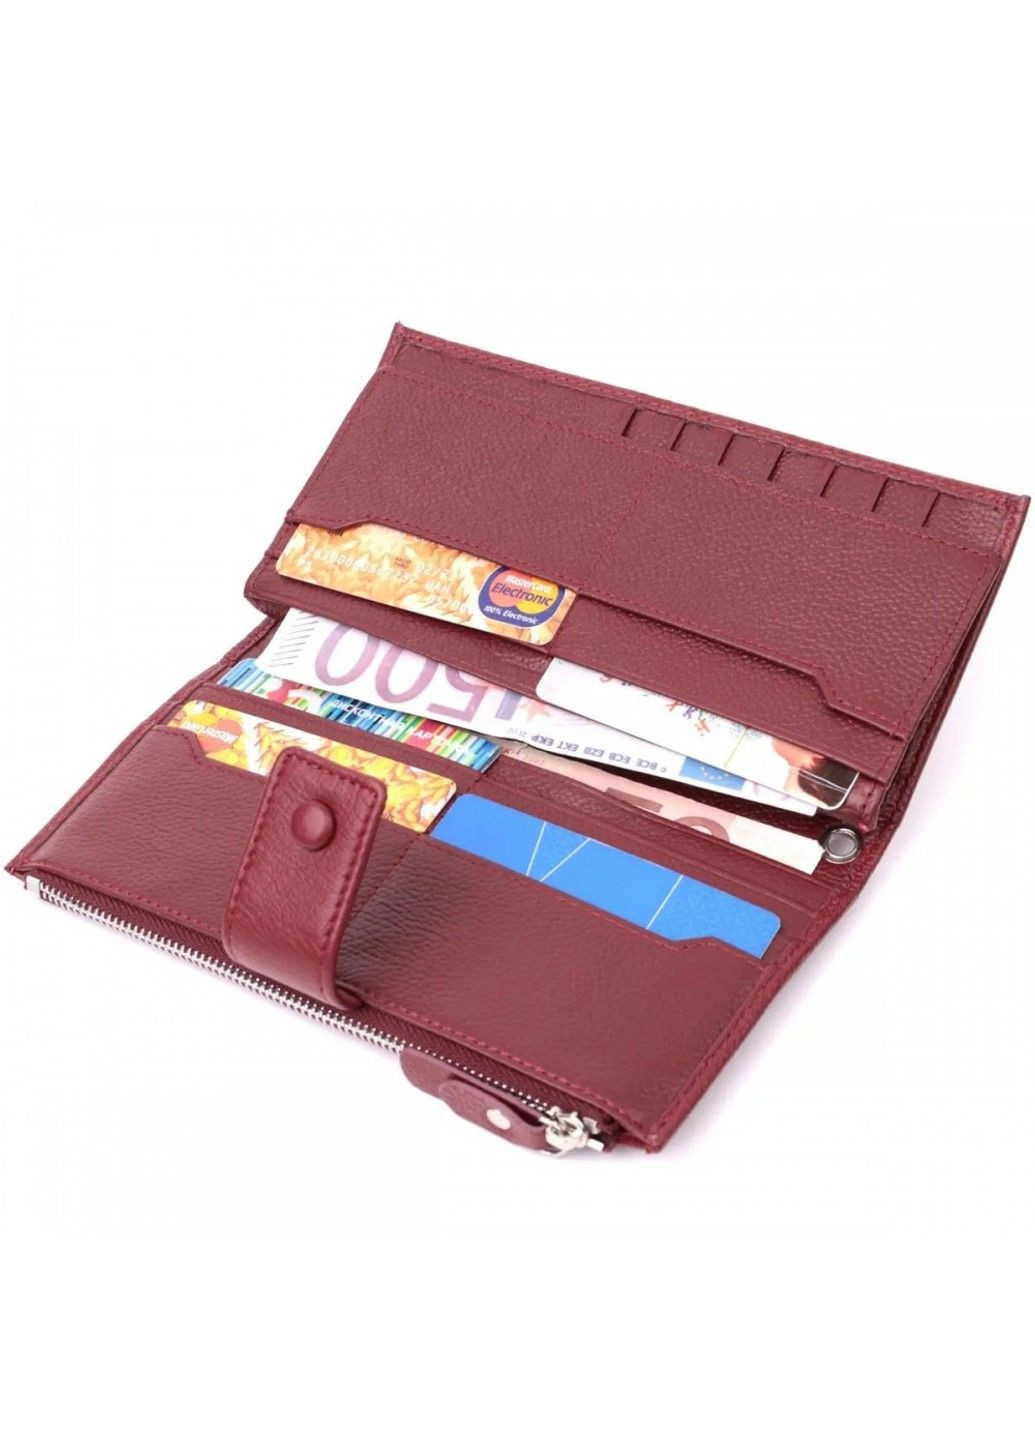 Жіночий шкіряний гаманець ST Leather 22535 ST Leather Accessories (278274787)